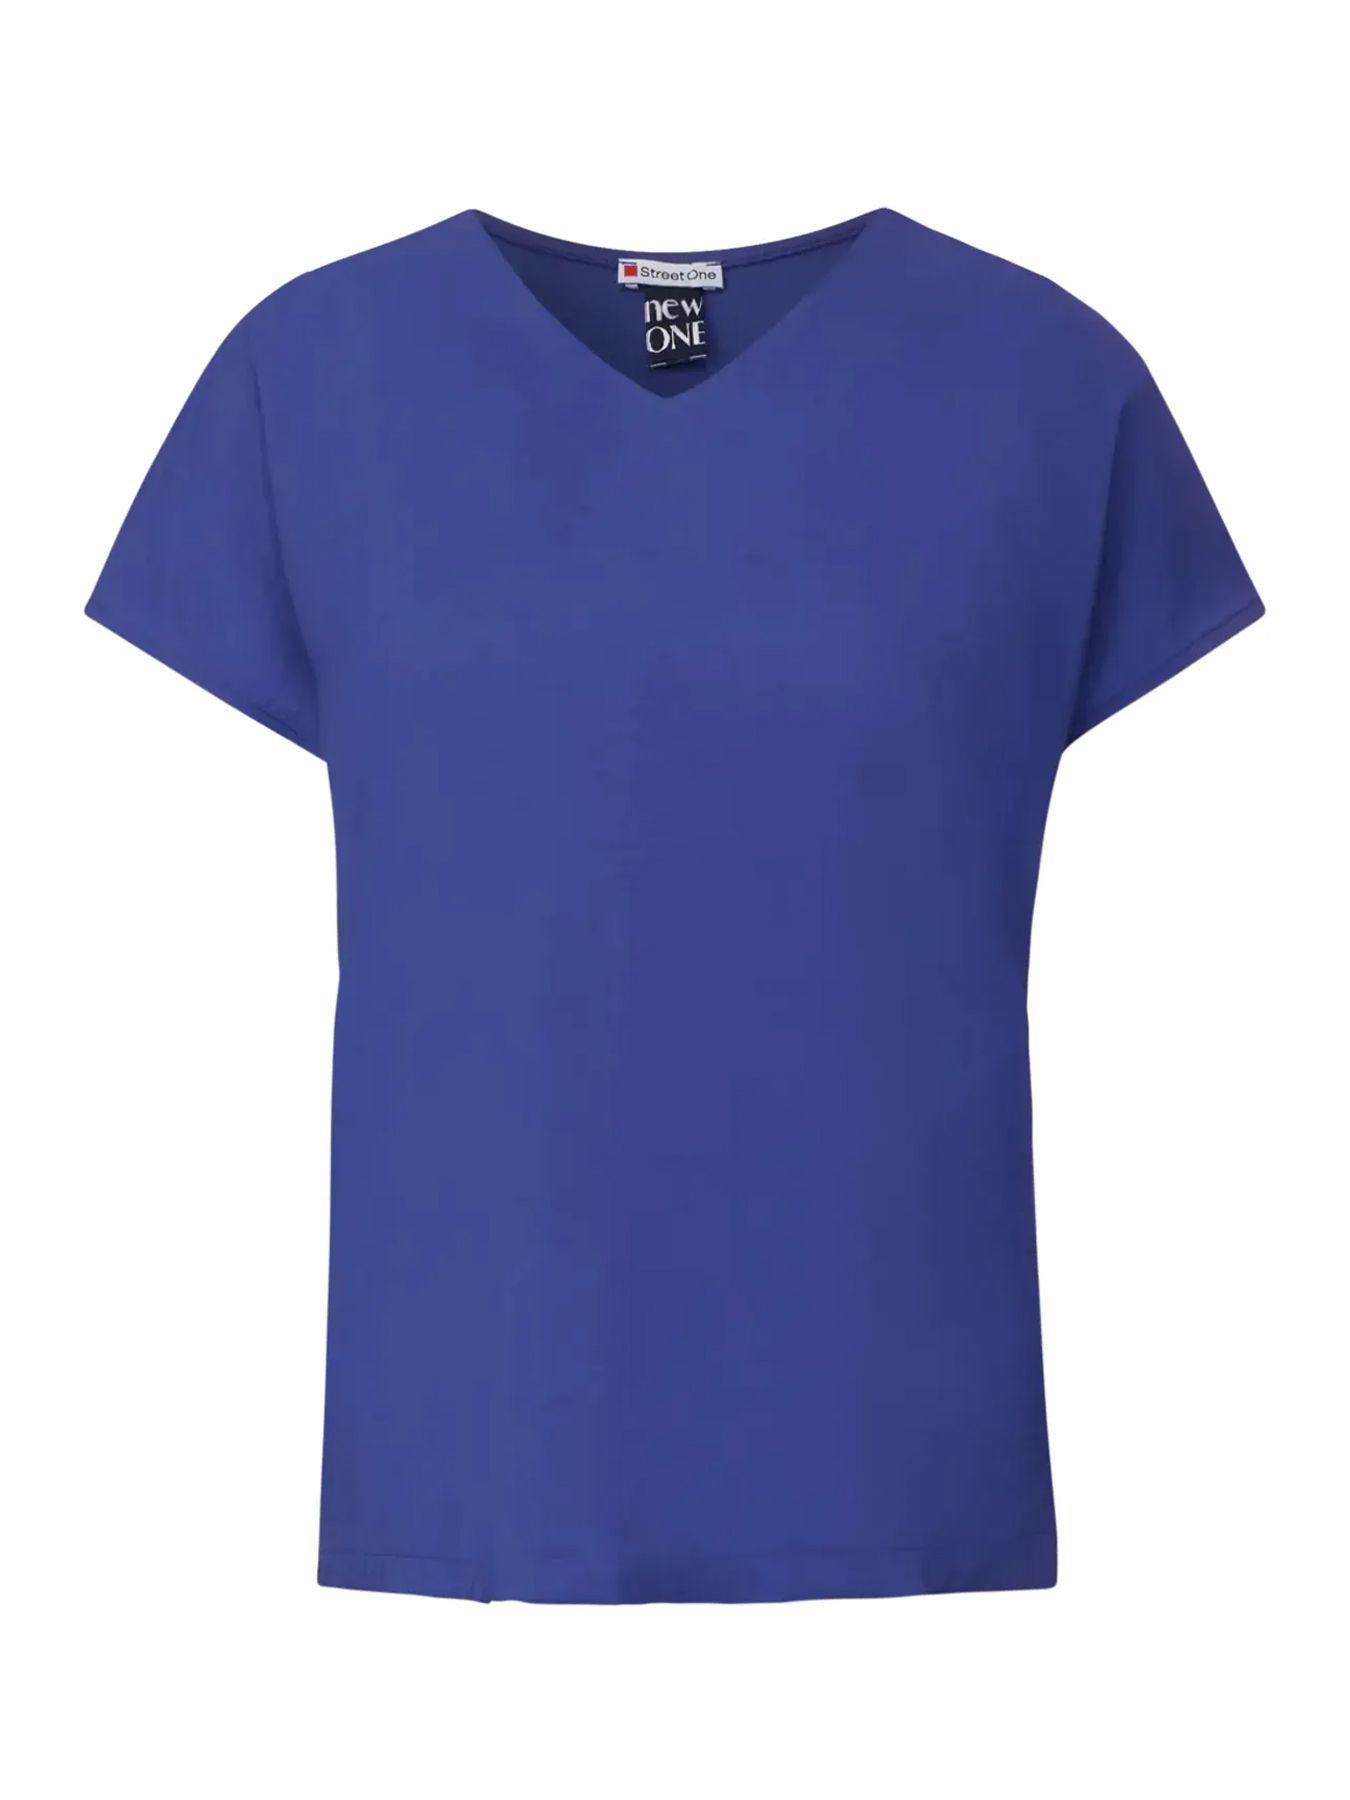 Street-One A321152 v-neck mat-mix shirt intense royal blue 2900146557025